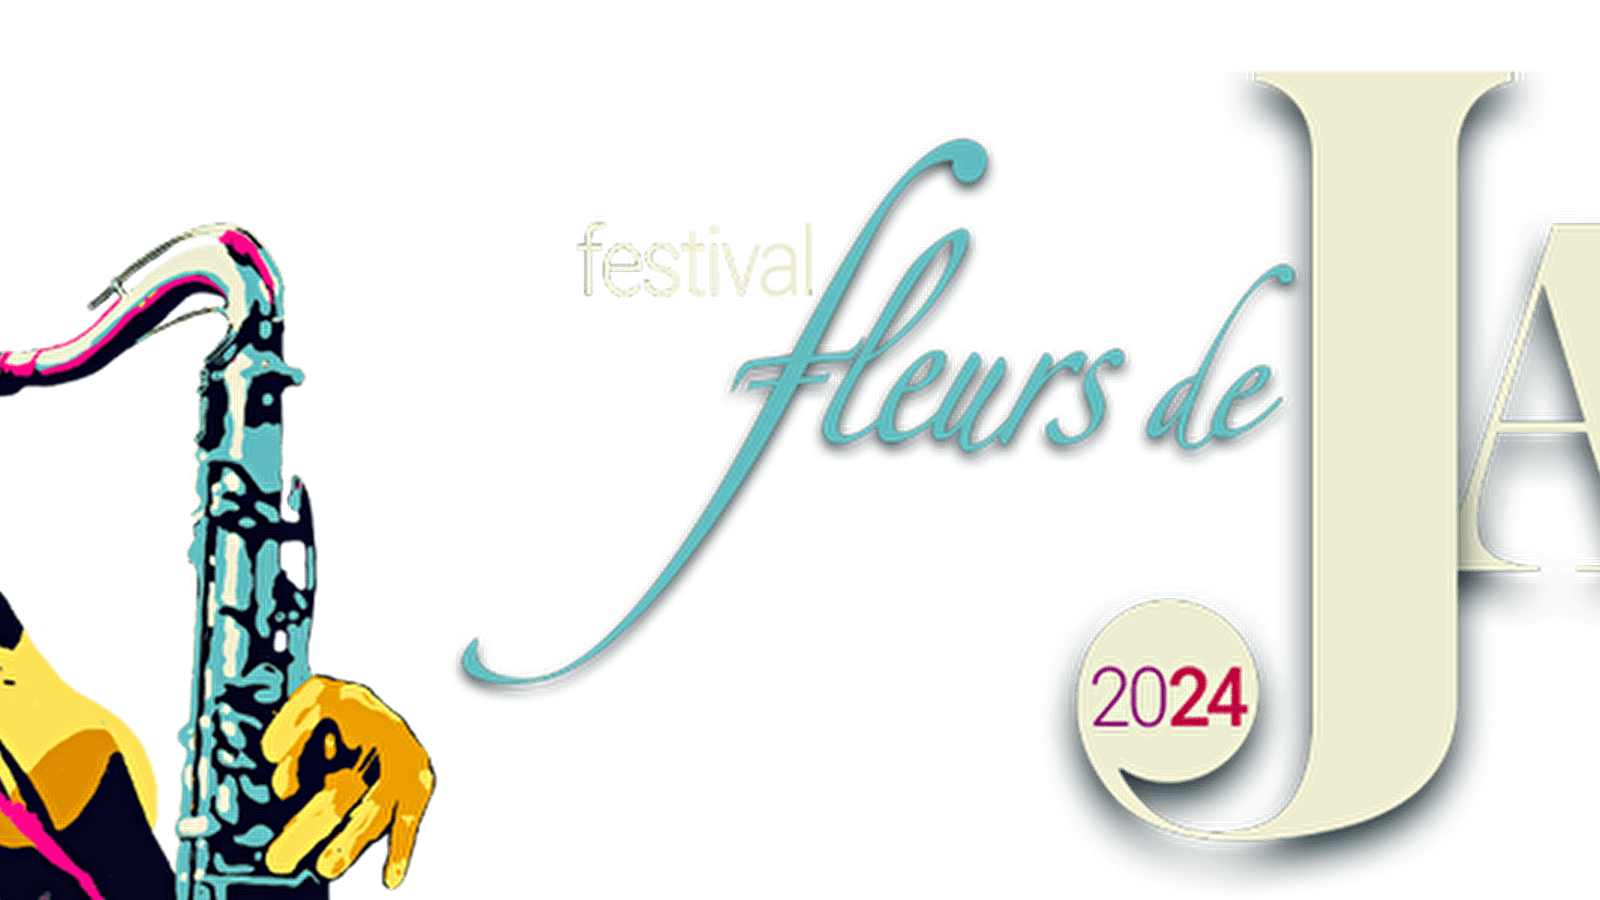 Festival "Fleurs de Jazz" du 9 au 11 mai 2024 - 11ème... Du 9 au 11 mai 2024